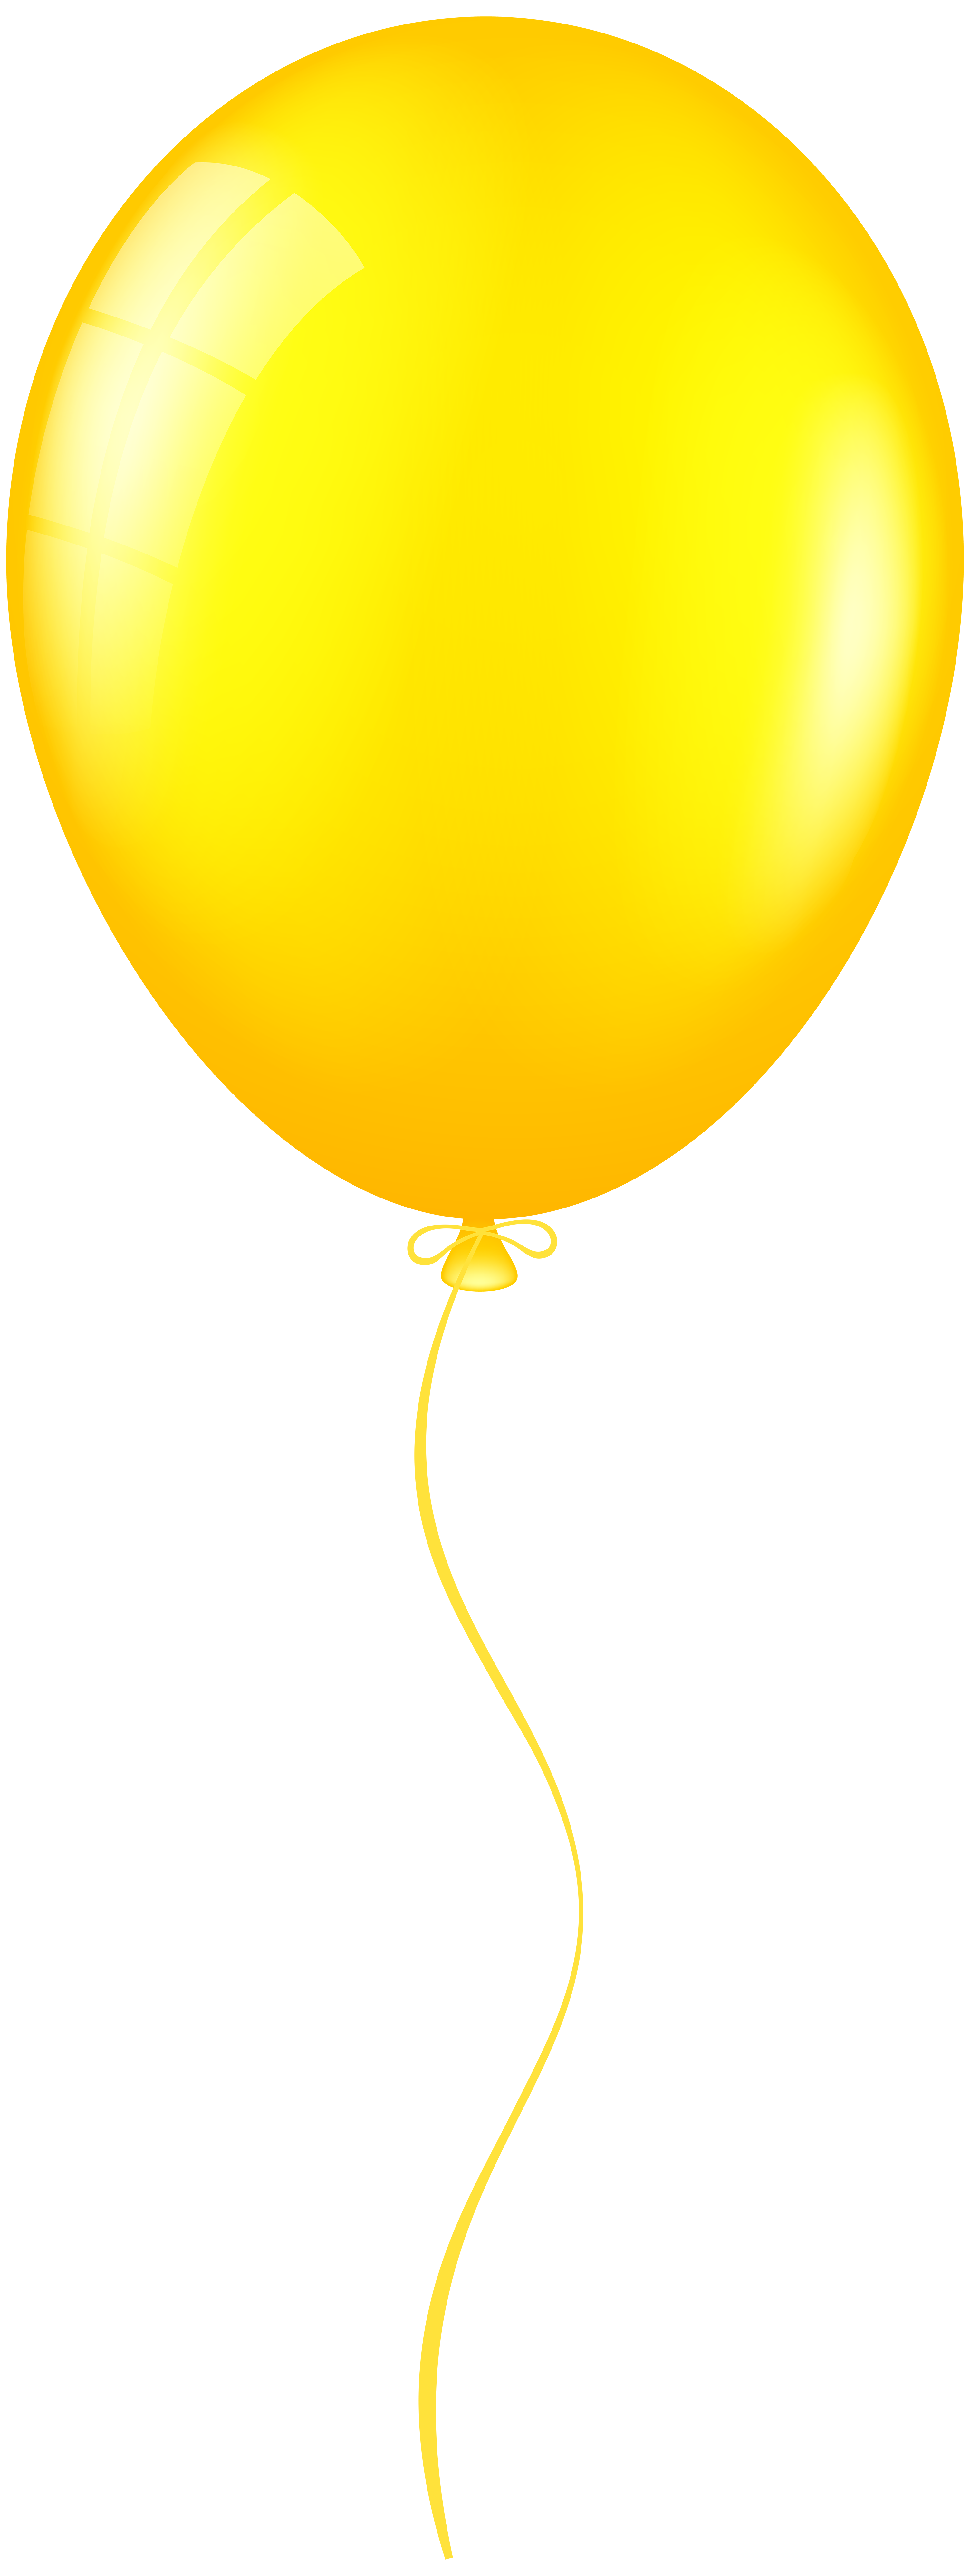 yellow balloon clipart - photo #18